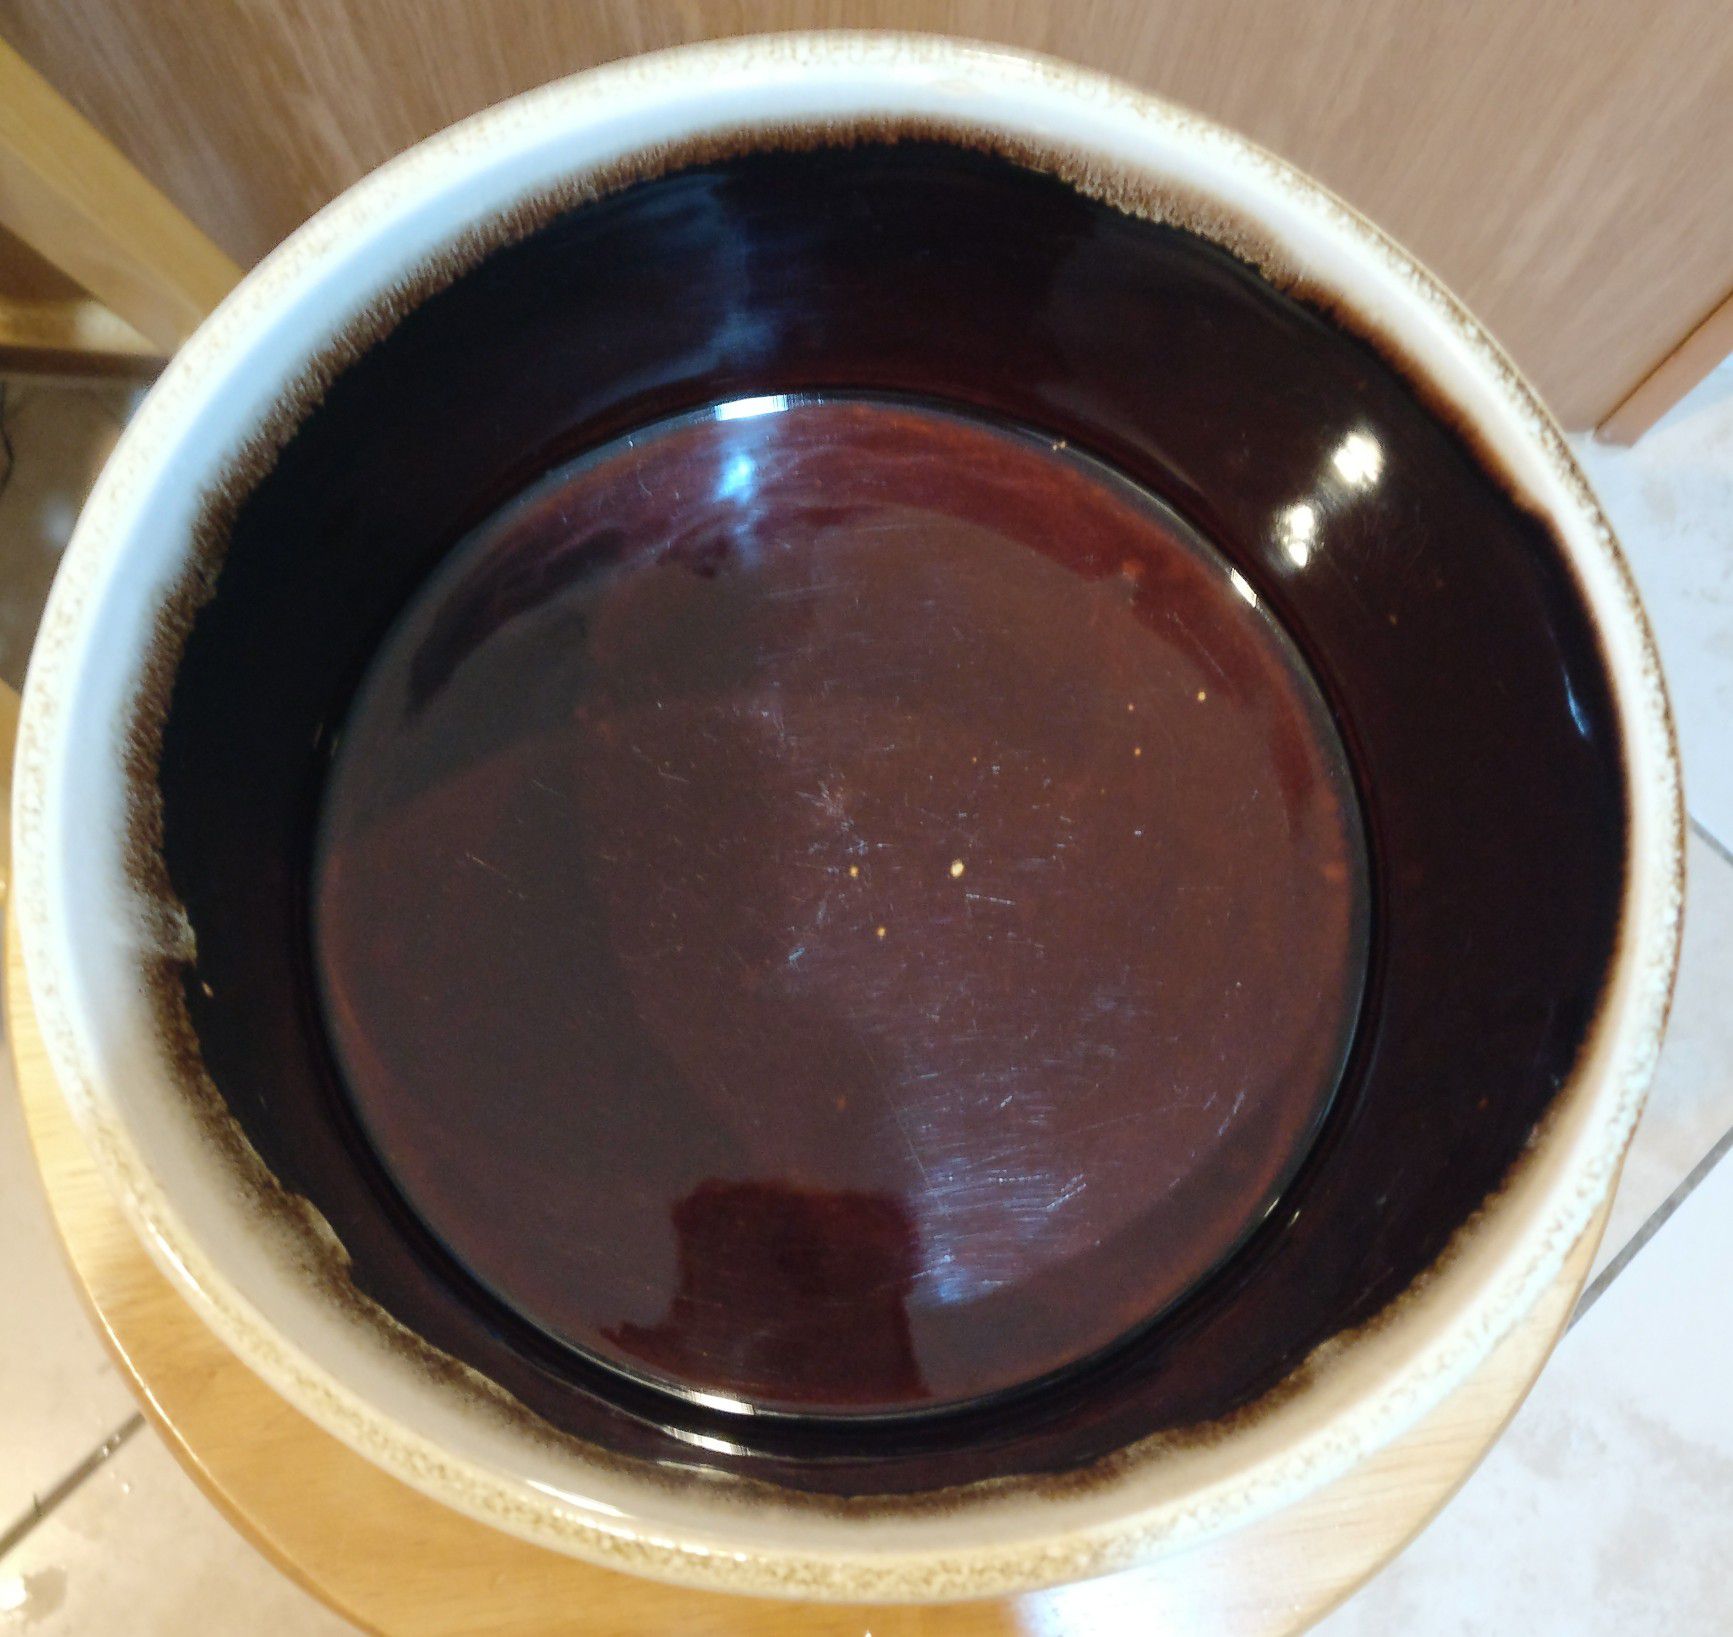 Pfaltzgraff ceramic bowl